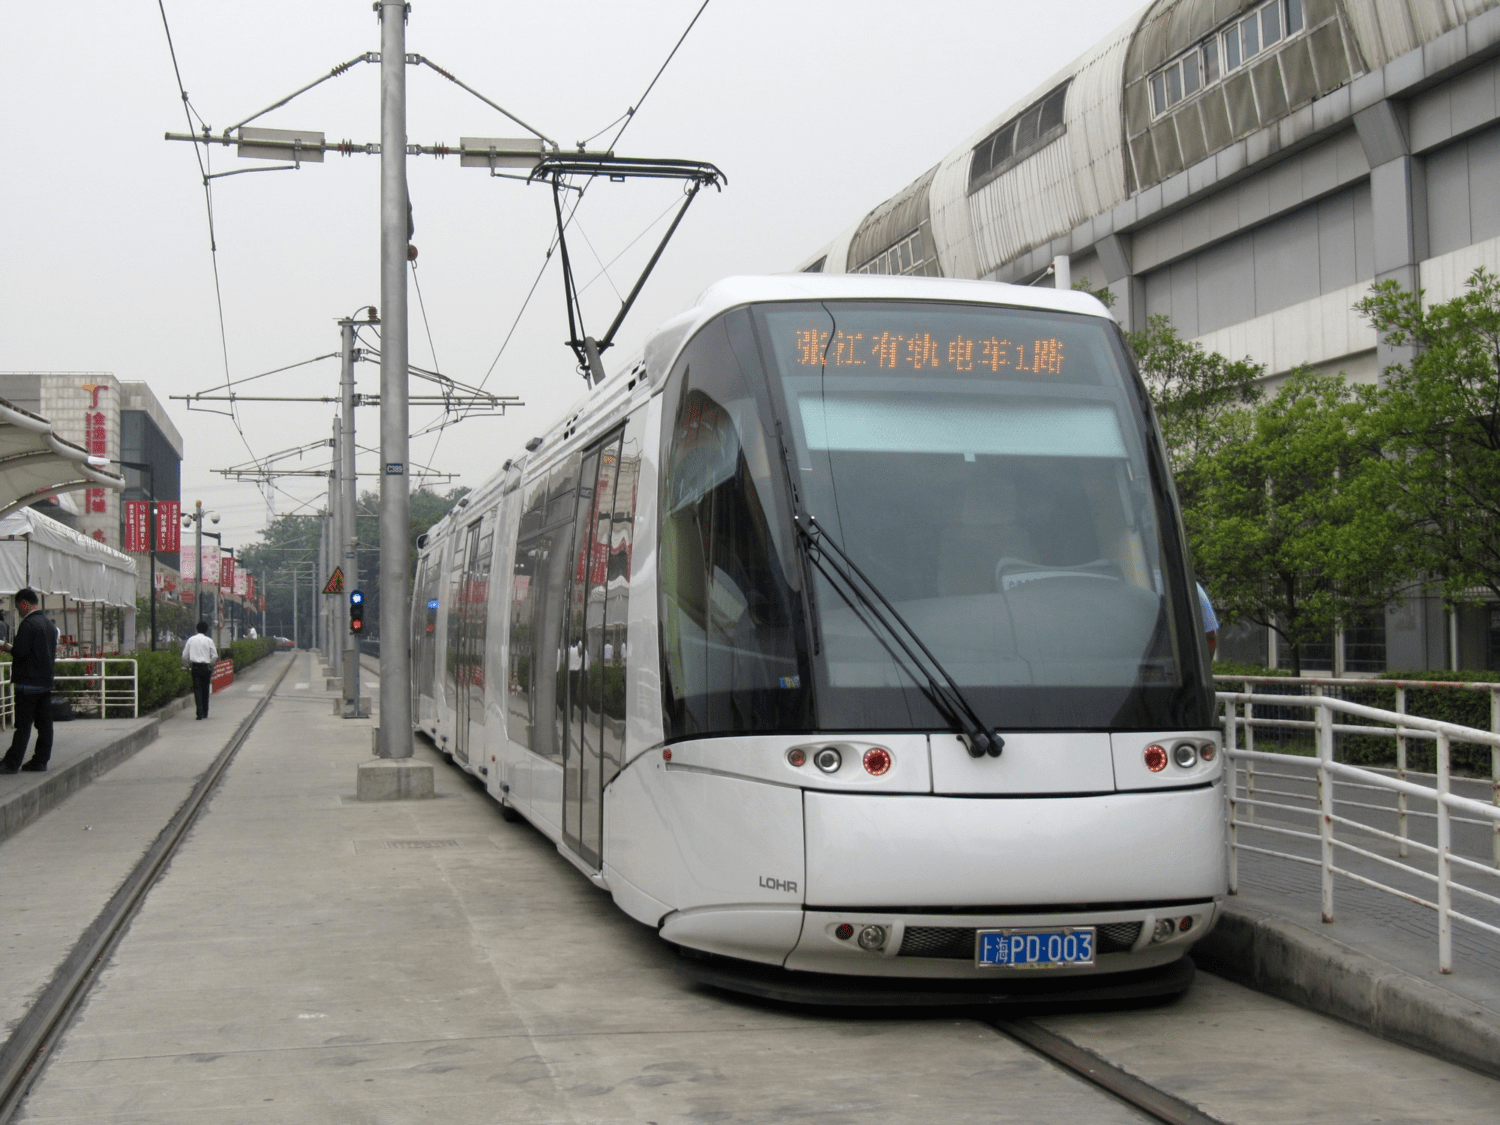 Tramvaj systému Translohr ve městě Čang-ťiang (Zhangjiang) přežila jen 13 let. Po celou dobu byla extrémně ztrátová. (zdroj: Wikipedia.org)